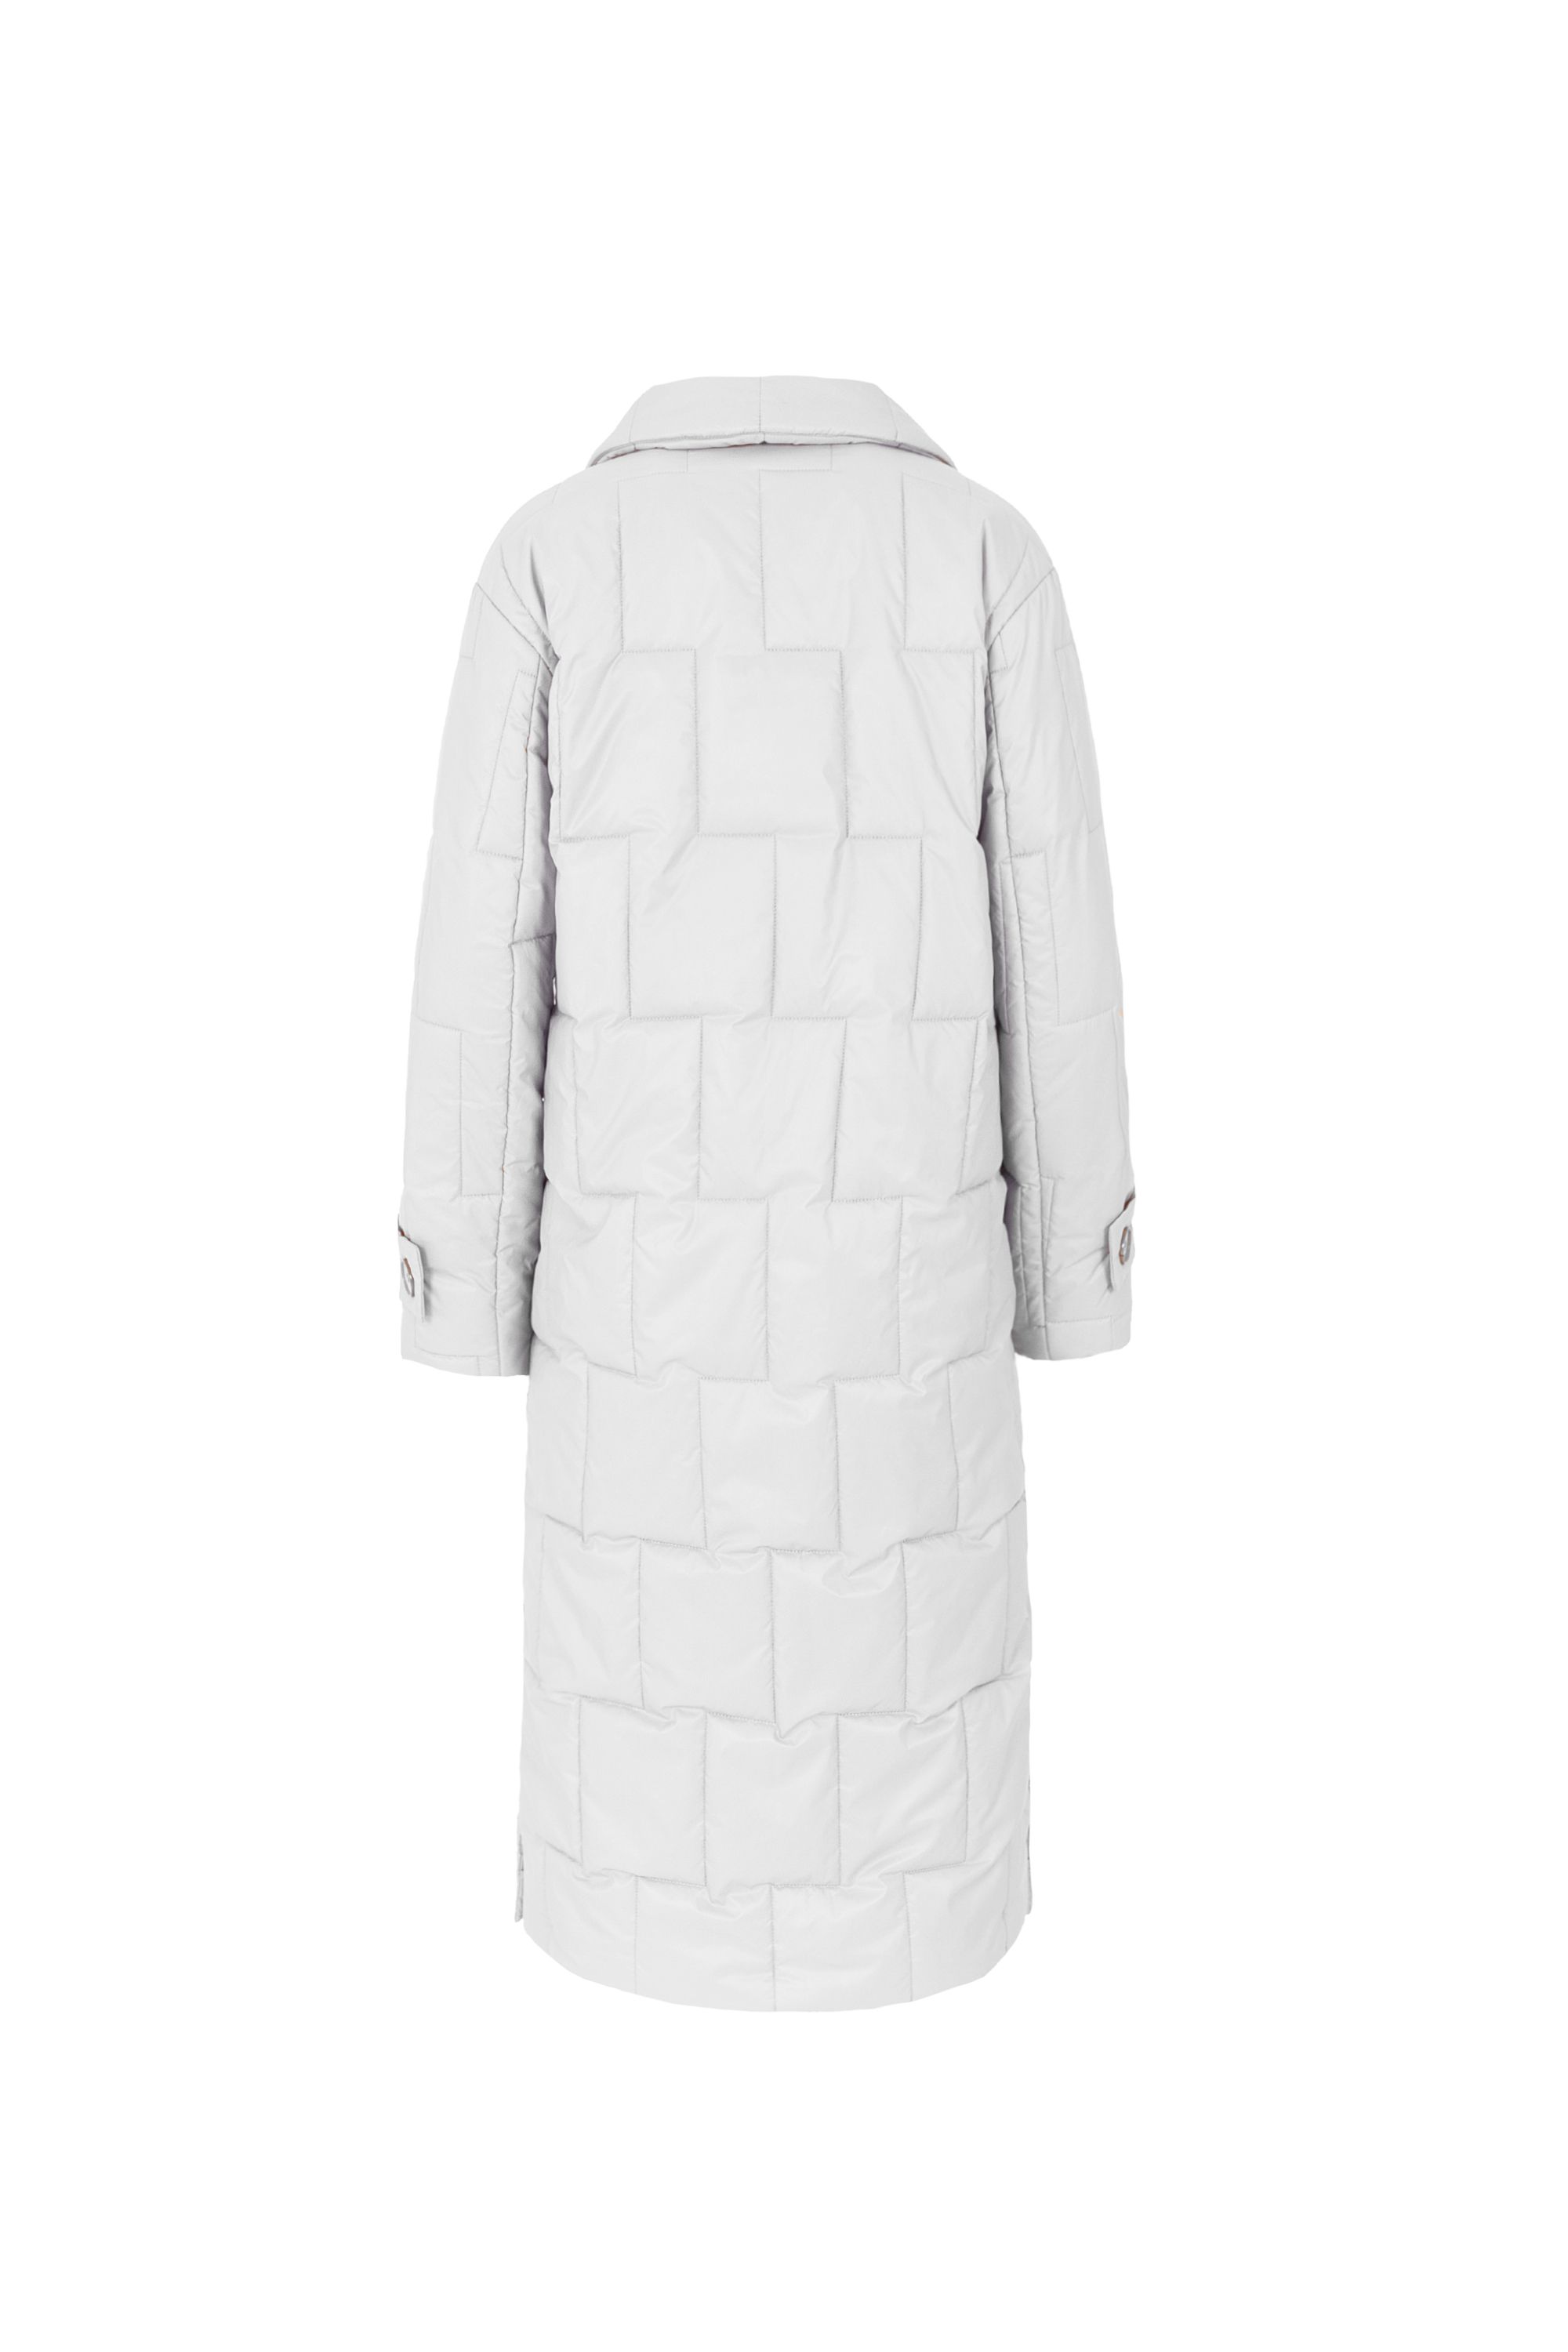 Пальто женское плащевое утепленное 5-12593-1